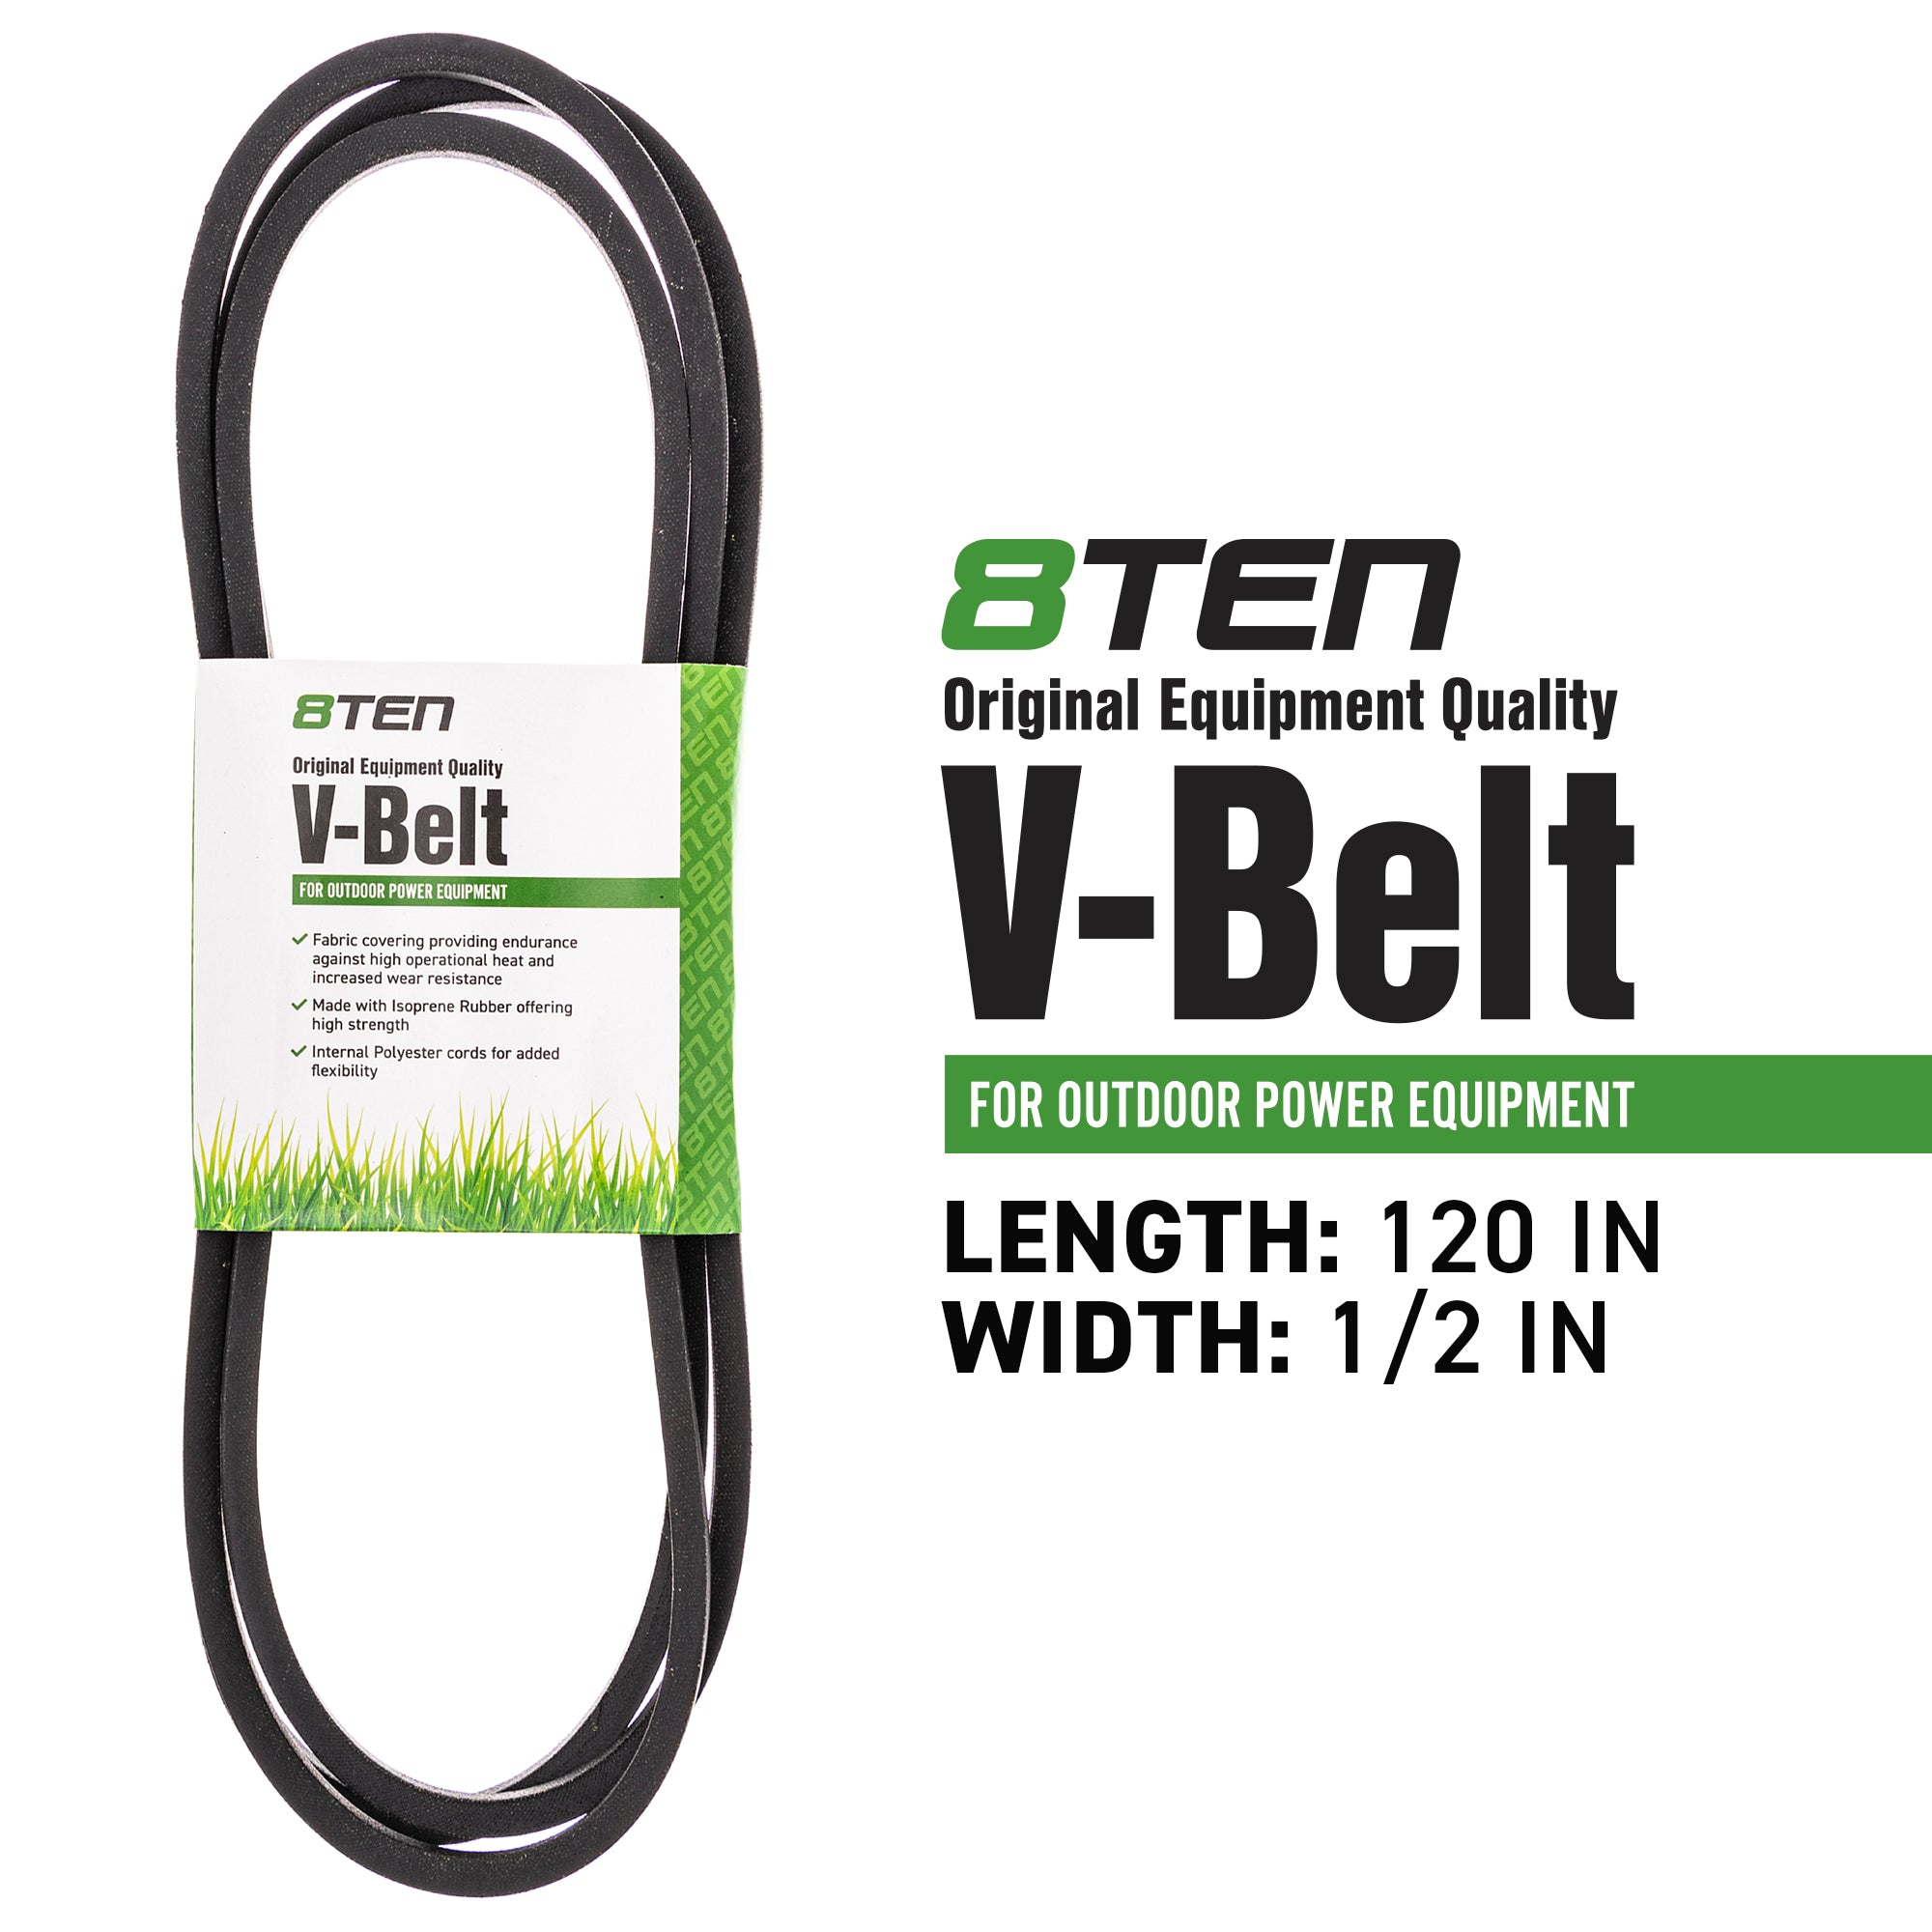 8TEN 810-CBL2425T Deck Belt for zOTHER Stens SIMPLICITY 818GT 6216